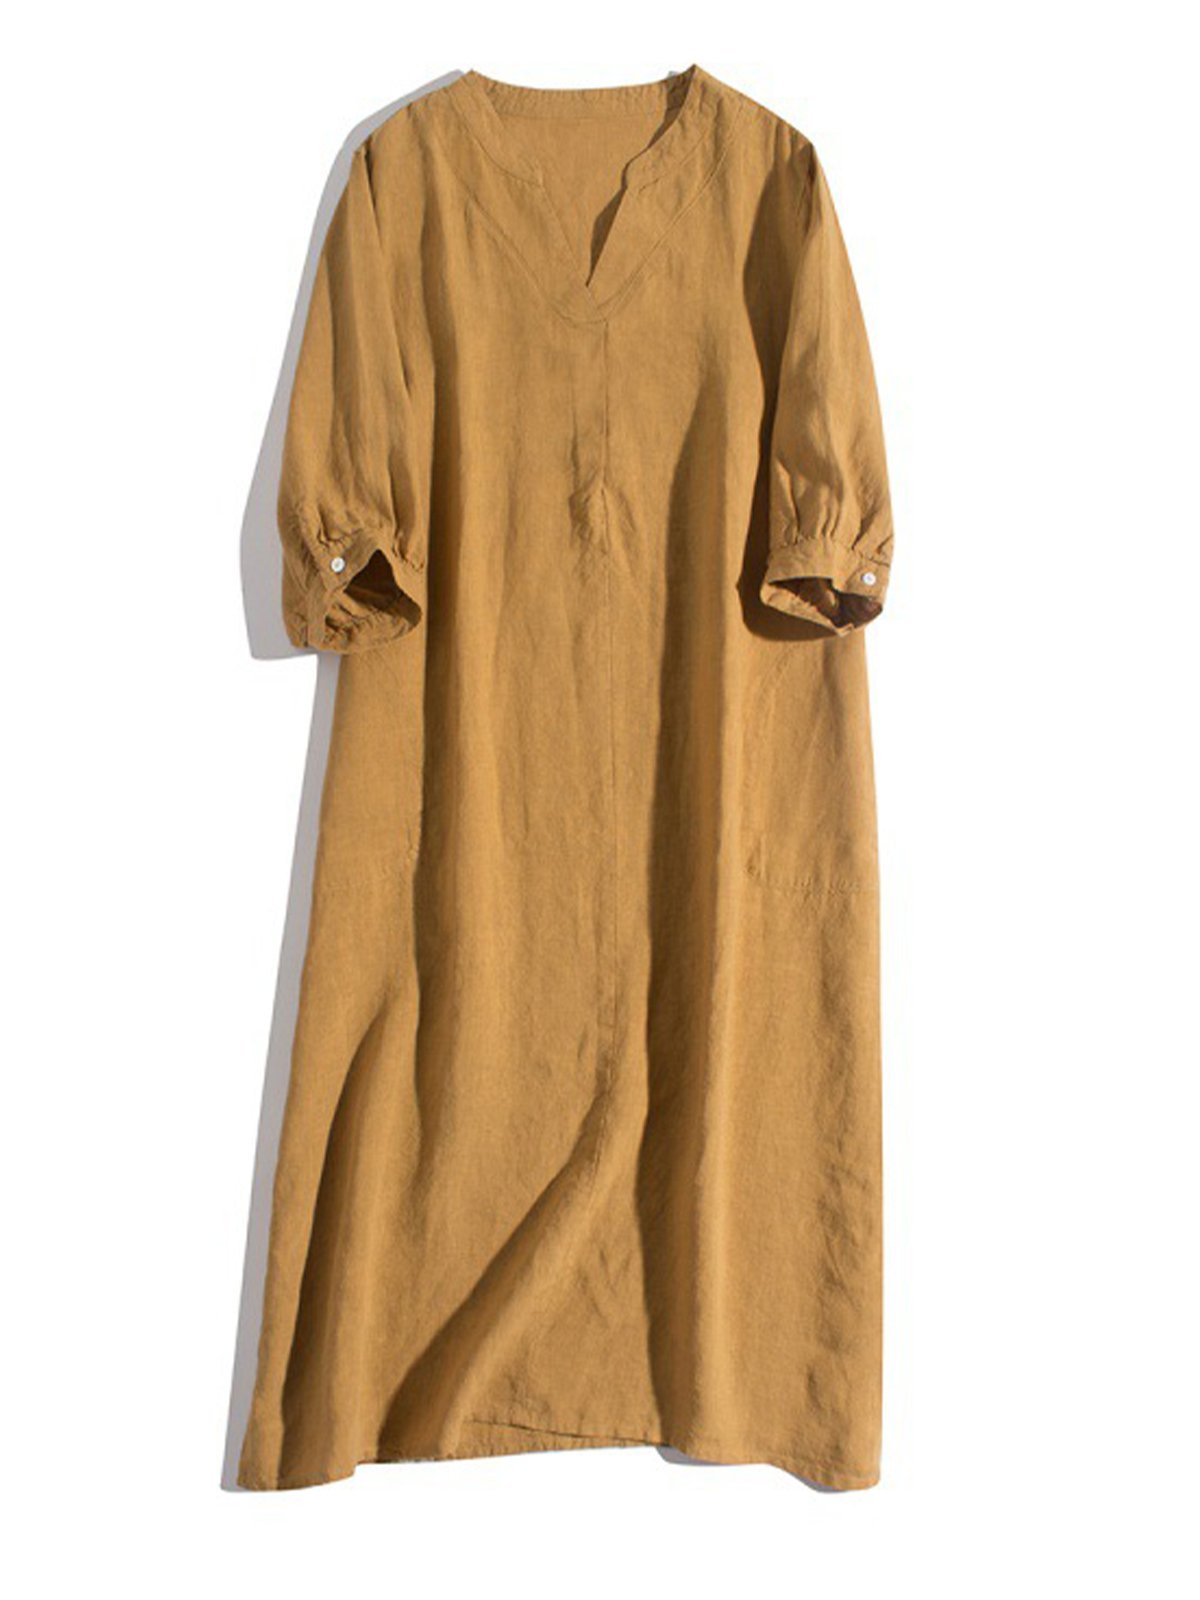 Lovevop Damen Literarisches Retro-Kleid mit V-Ausschnitt, einfarbig, lockeres Kleid 